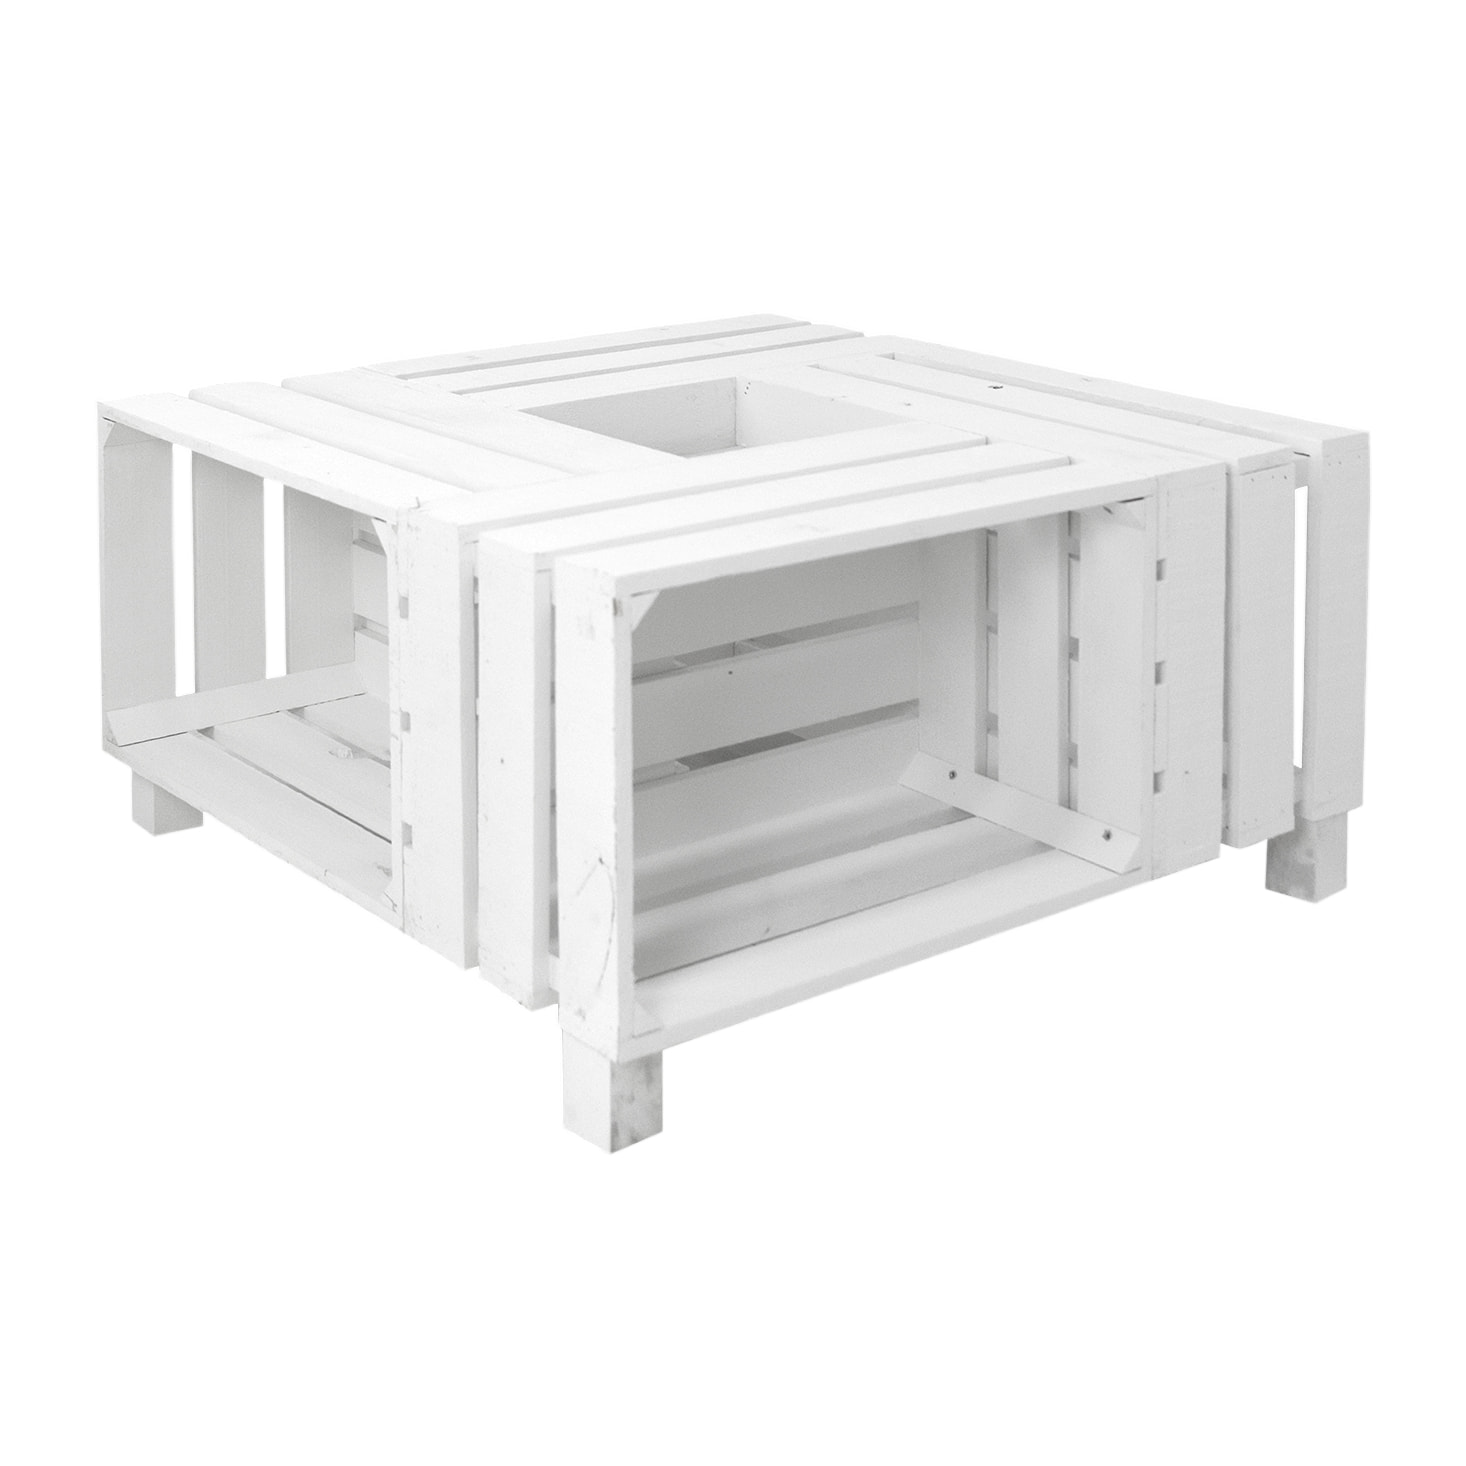 Table basse en bois massif blanc 75x75x32,5cm Hauteur: 32.5 Longueur: 75 Largeur: 75